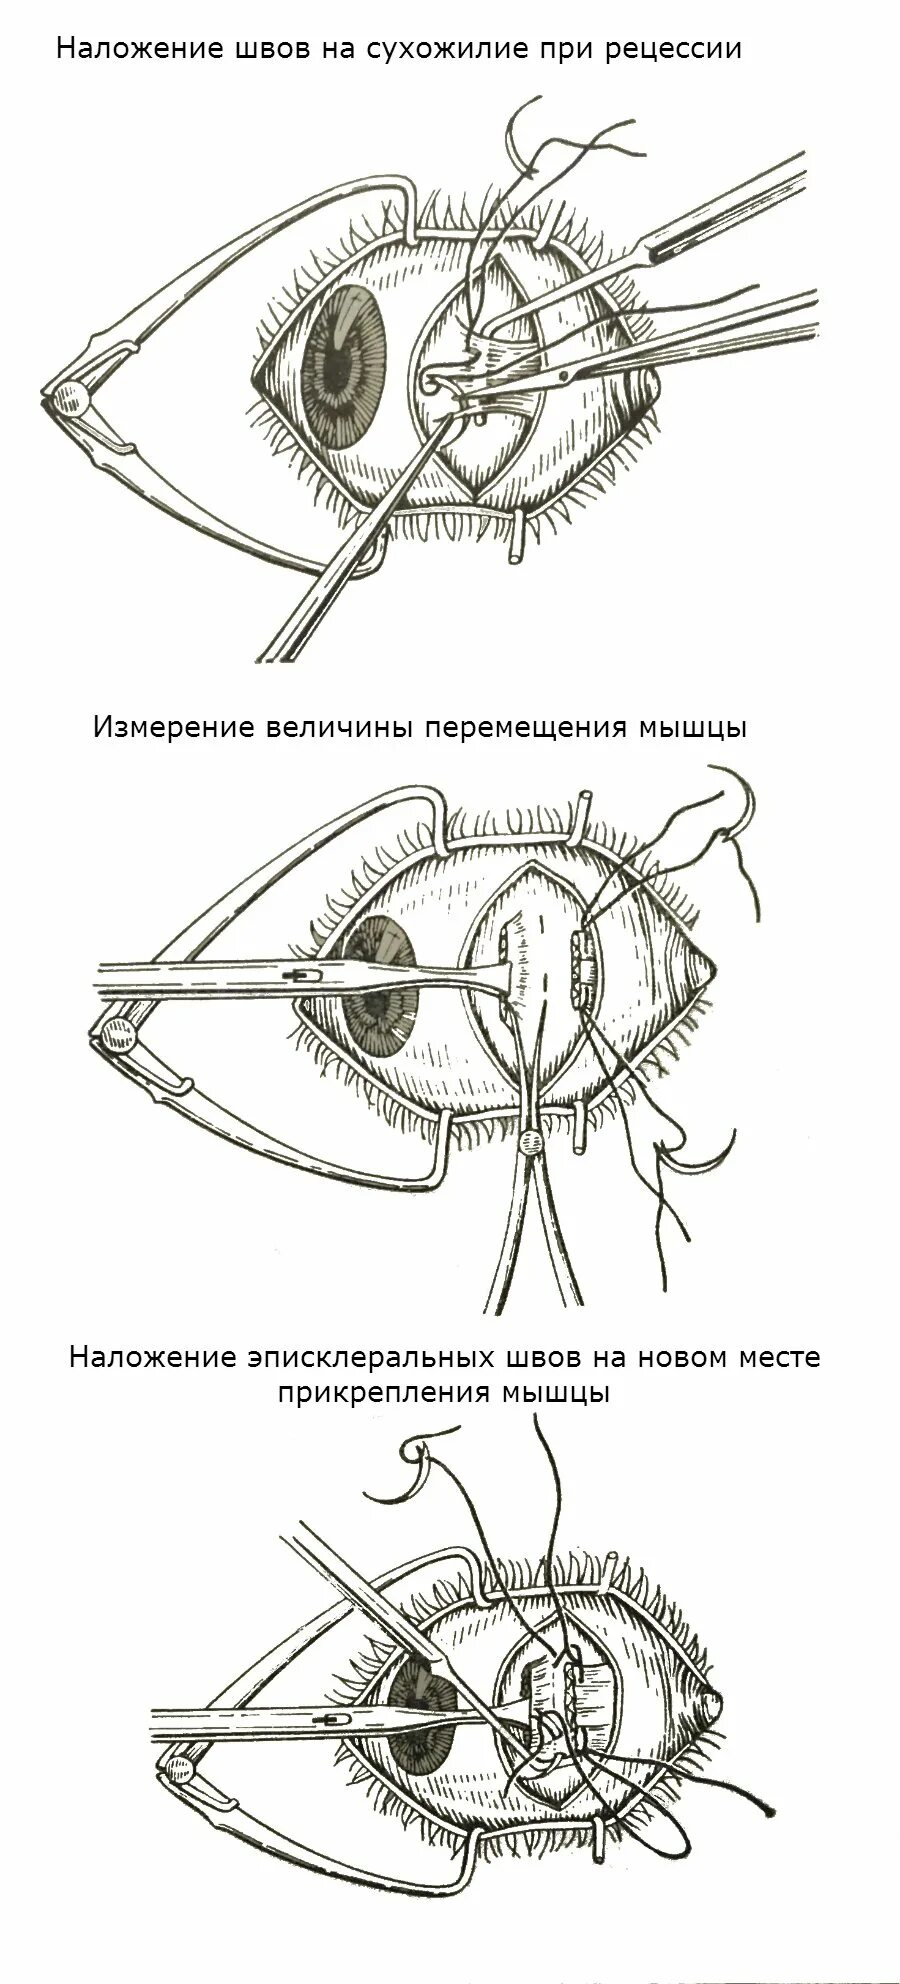 Рецессия глазодвигательной мышцы. Глазодвигательные мышцы глаза. Операция по косоглазию. Операция по коррекции косоглазия.